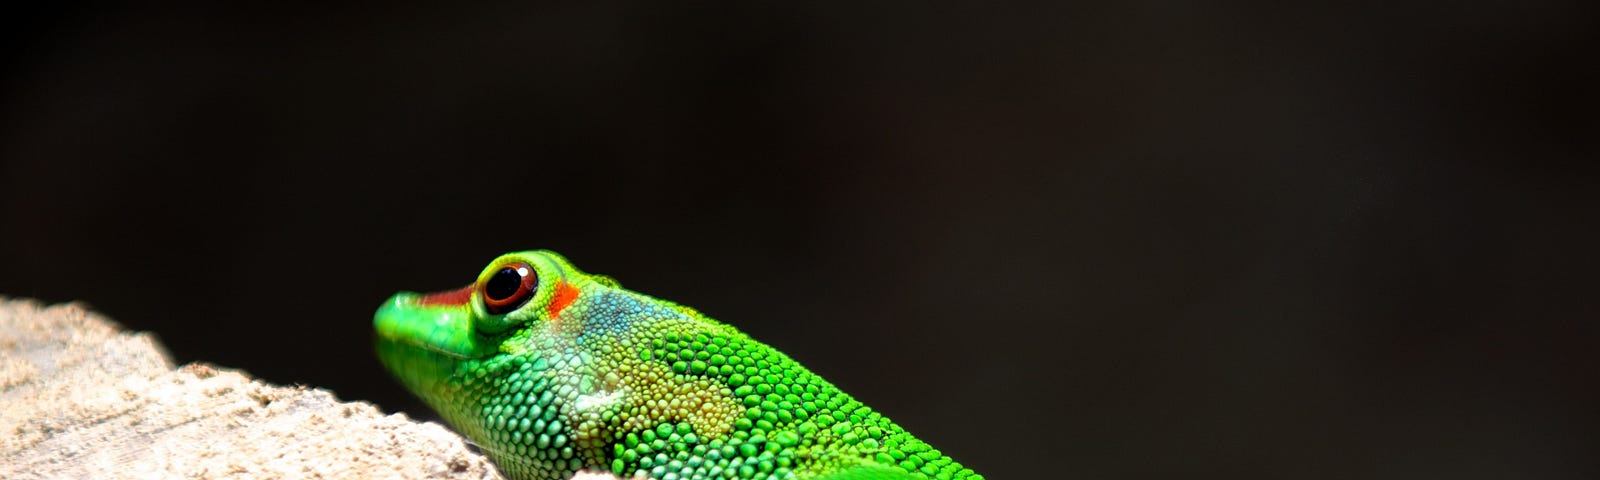 Eyes of the gekko. A bright green gekko close-up, black background.